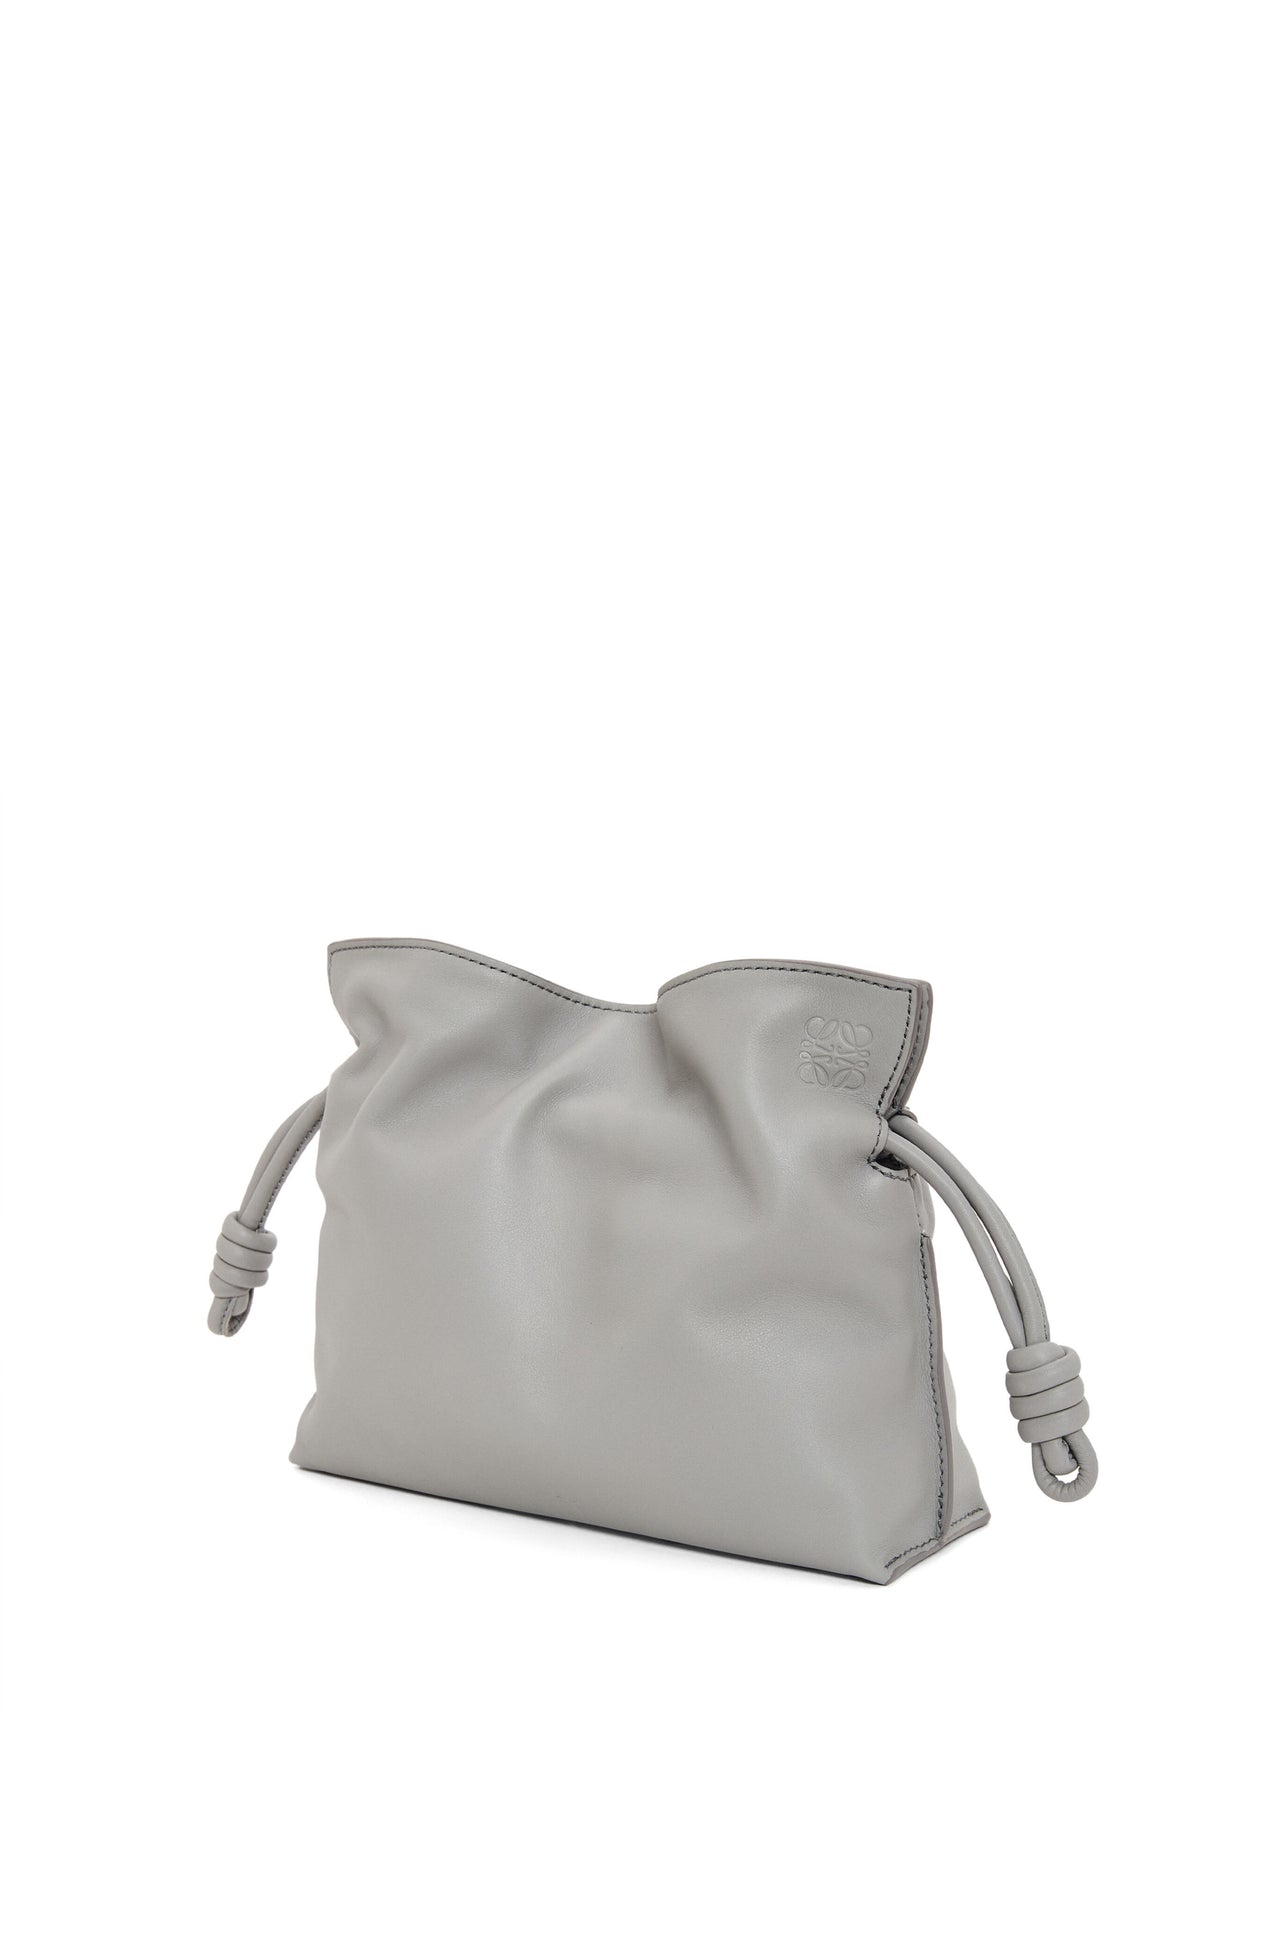 Loewe Mini Flamenco clutch in nappa calfskin (Pearl Grey)